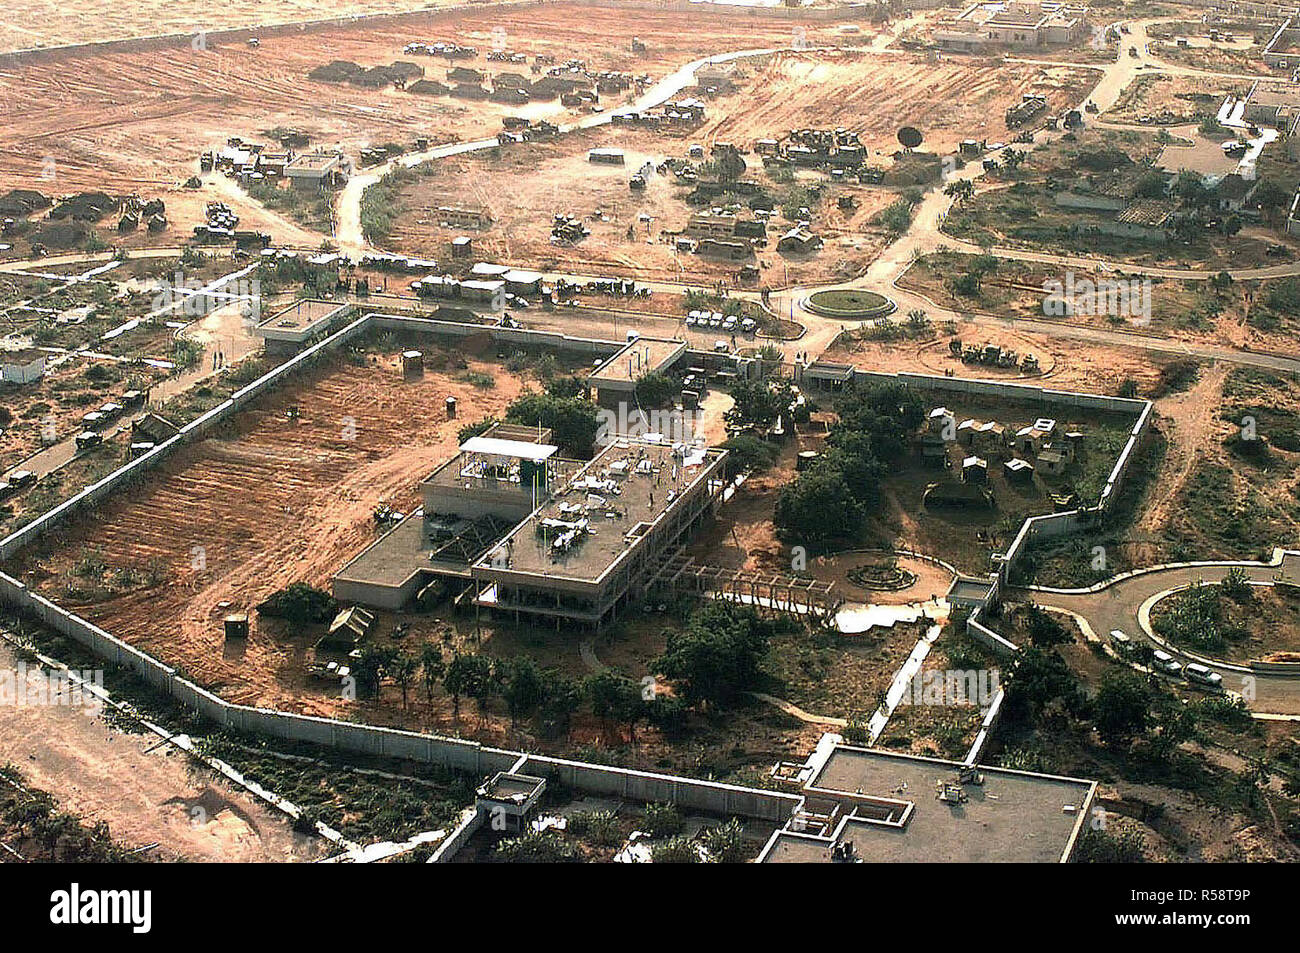 Vista aerea del lato sinistro dell'Ambasciata statunitense composto a Mogadiscio, in Somalia. La Joint Task Force il quartier generale per ripristinare la speranza è che ci si trovano. Non ci sono piani per costruire una tendopoli sul composto. Diverse tende e Nazioni Unite le attrezzature sono situati al di fuori delle pareti dell'ambasciata nella parte superiore del telaio. Questa missione è a diretto sostegno di Restore Hope. Foto Stock